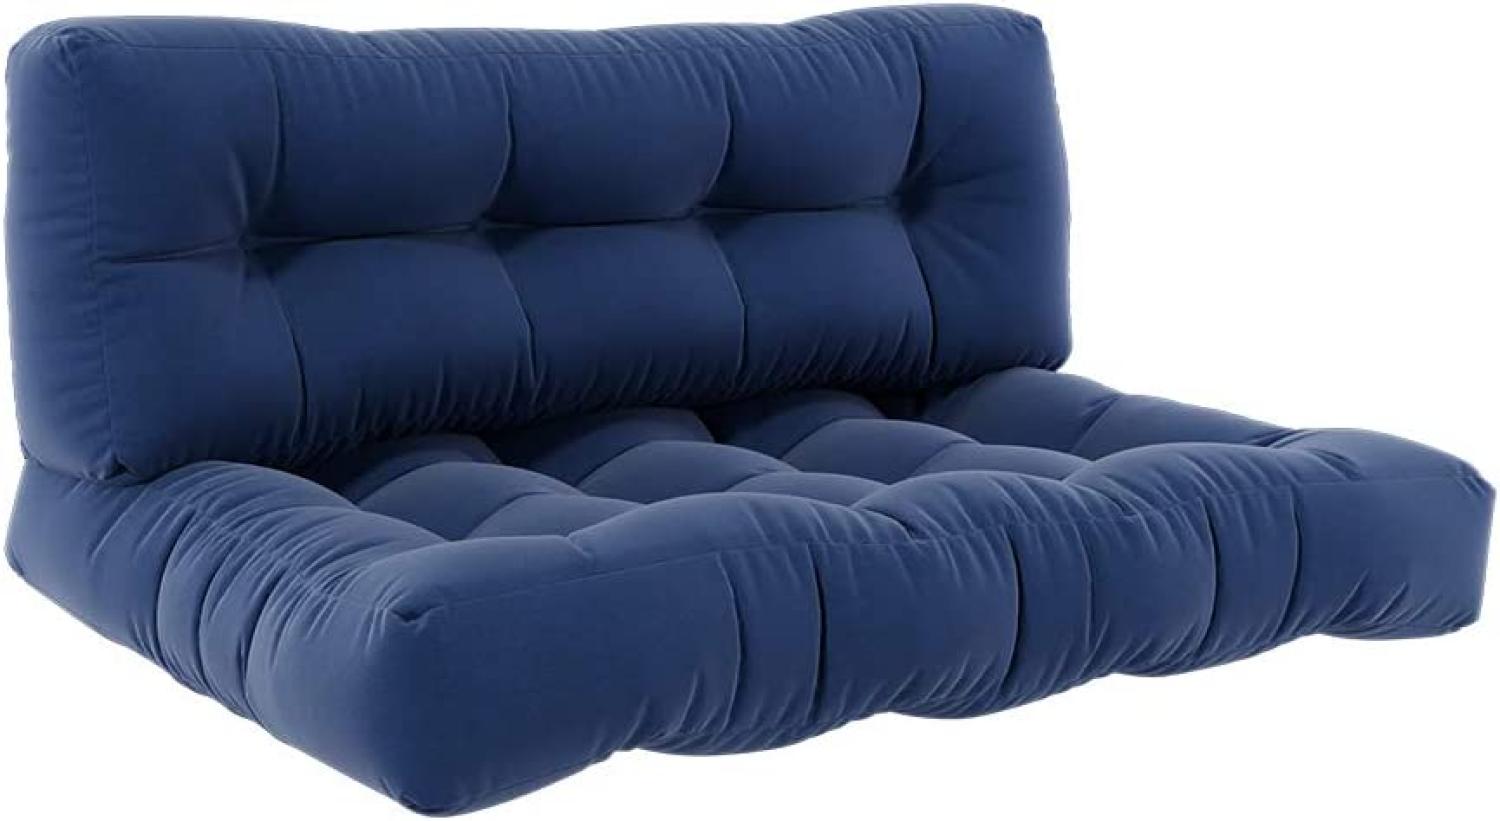 VICCO Palettenkissen Set Sitzkissen + Rückenkissen Palettenmöbel Flocke -Blau Bild 1